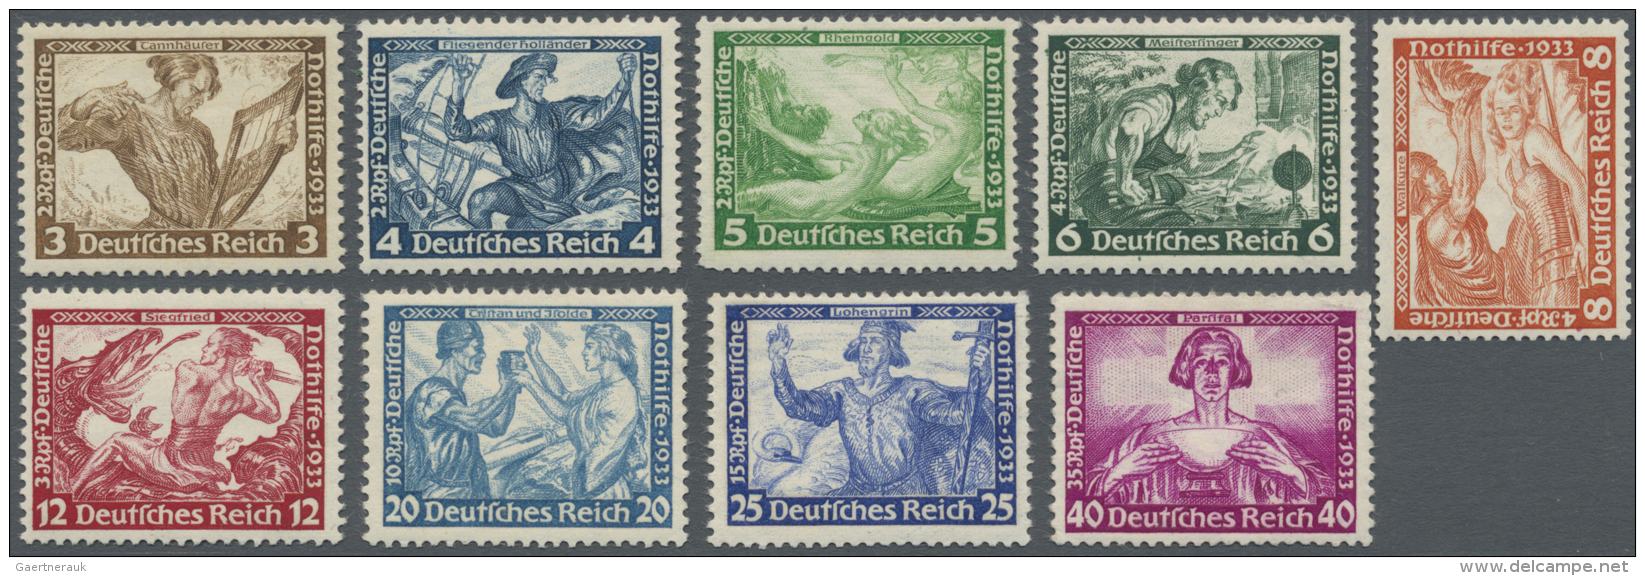 Deutsches Reich - 3. Reich: 1933: Wagner 3 Pfg. Bis 40 Pfg., Postfrischer Kabinettsatz Billigst Gerechnet Michel 2.400,- - Ongebruikt